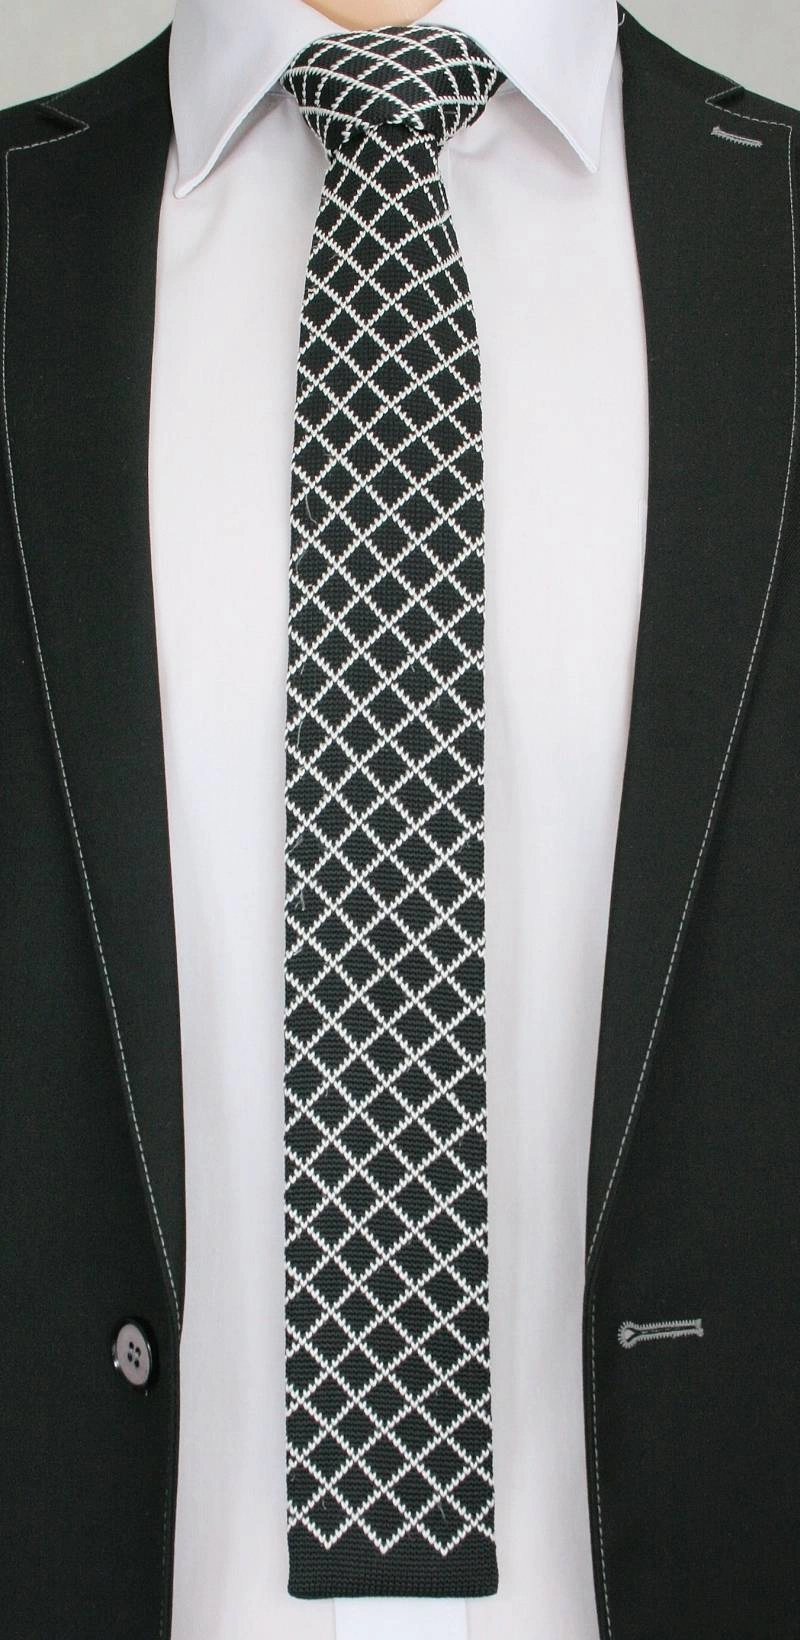 Dziergany Krawat Męski Knit w Białą Kratkę, Romby - 5,5 cm - Alties, Czarny